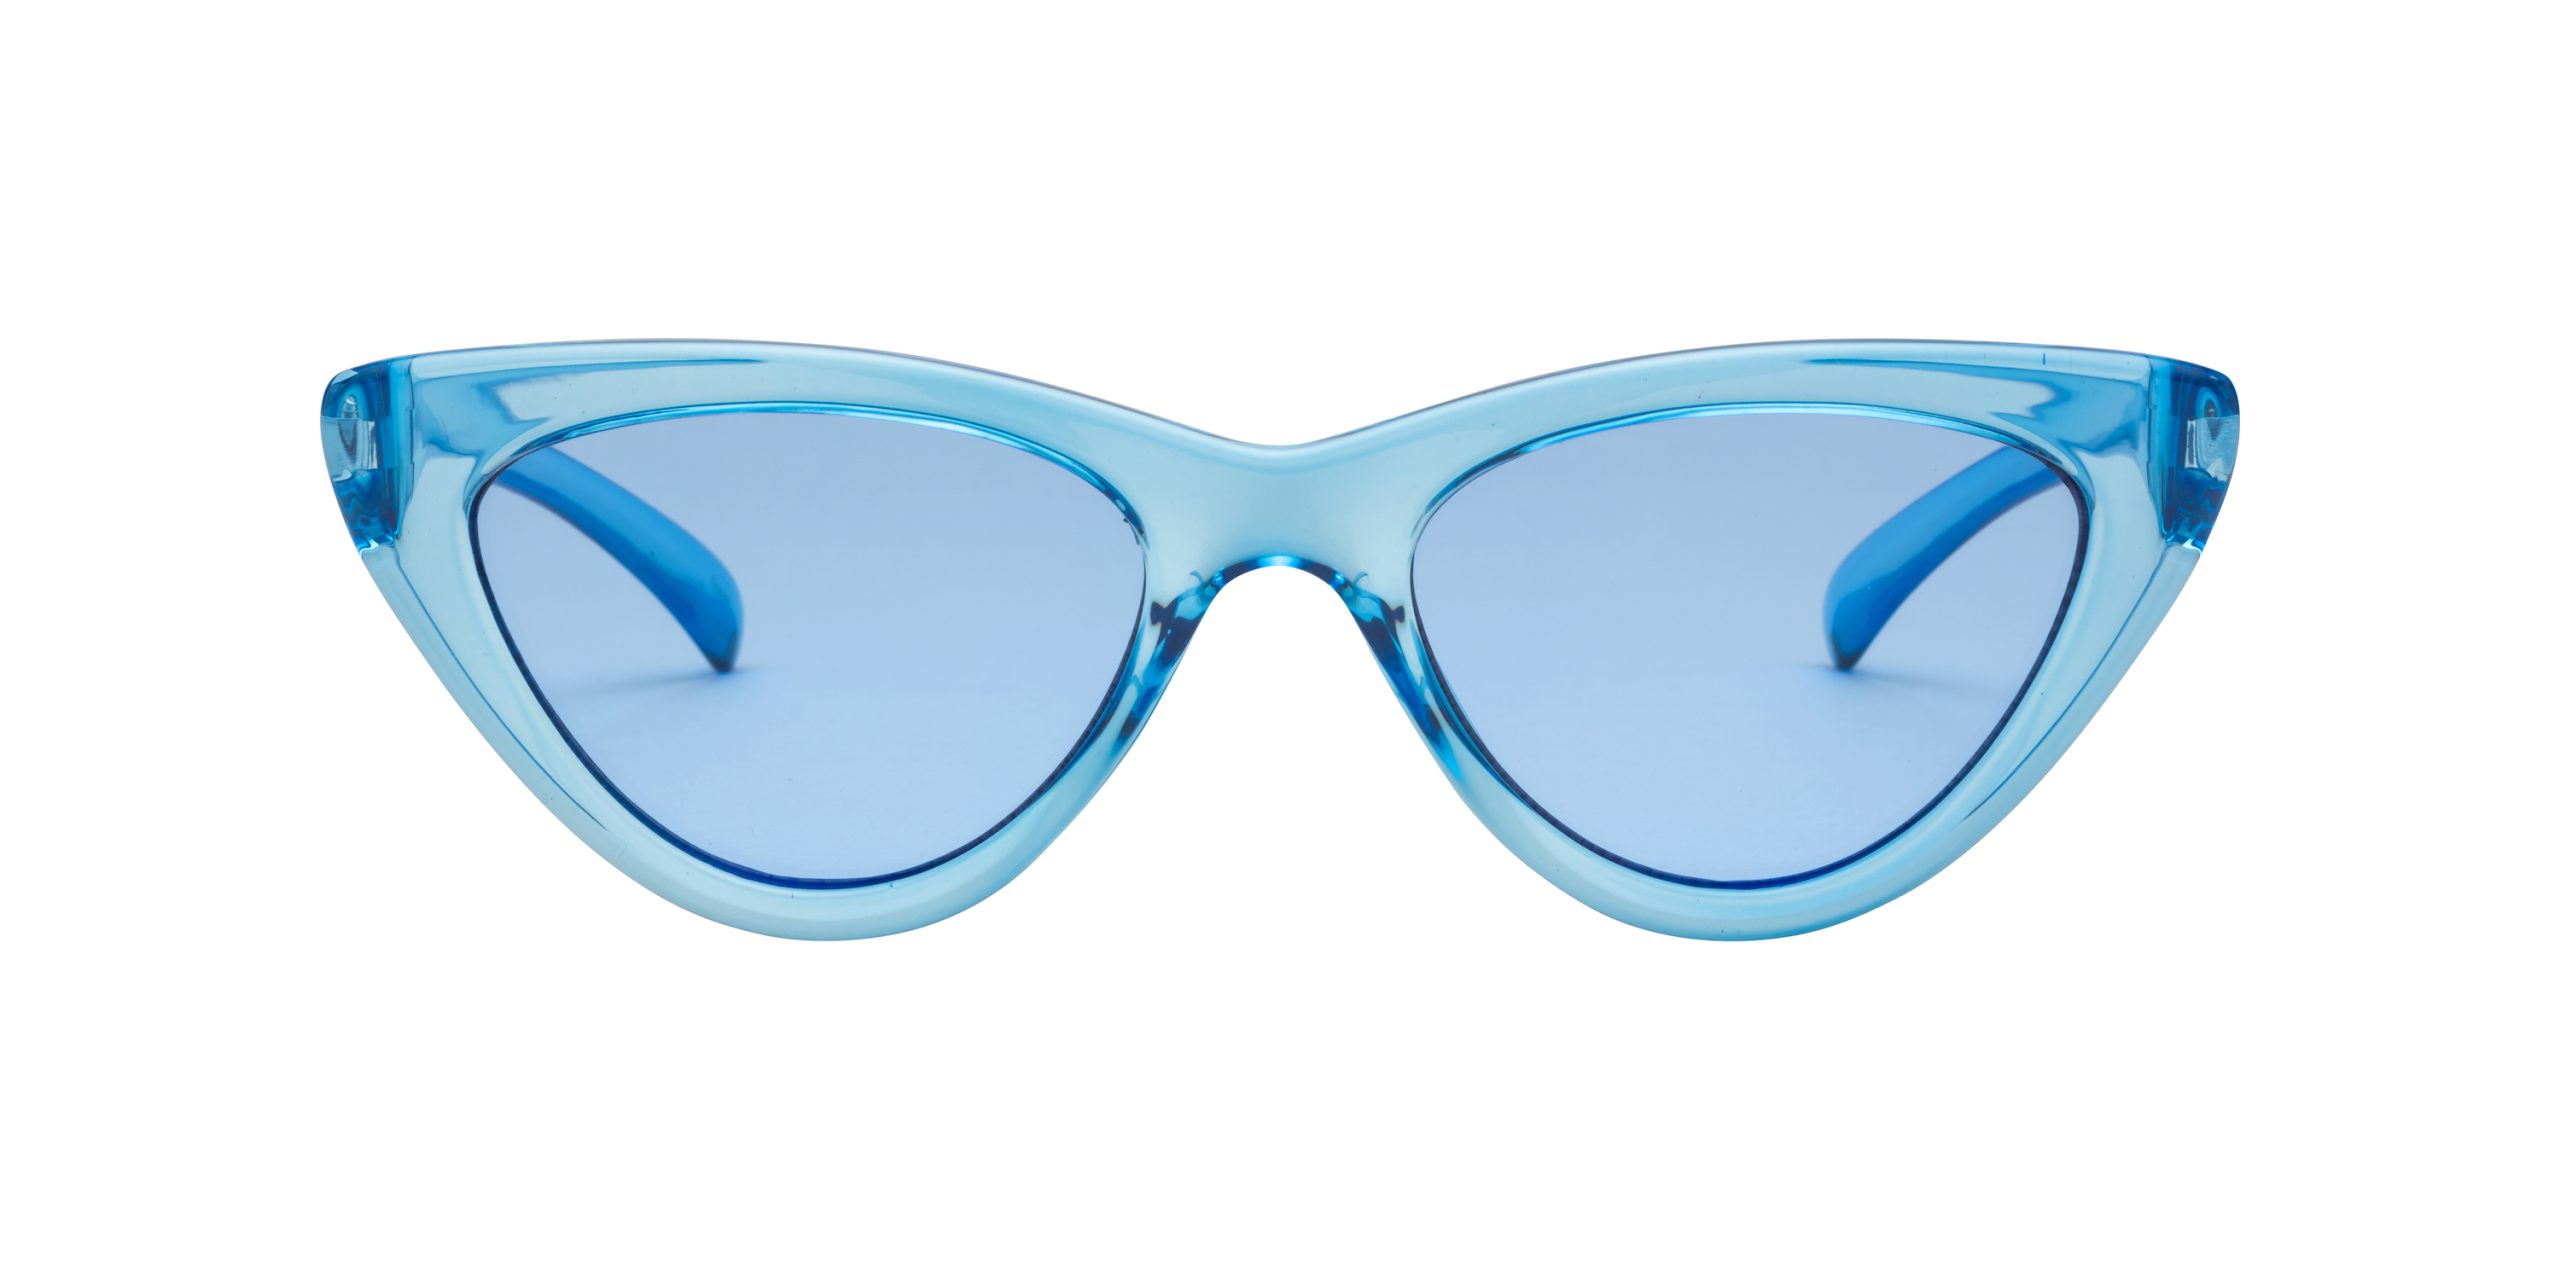 Volcom 2023 S/S Sunglasses Preview